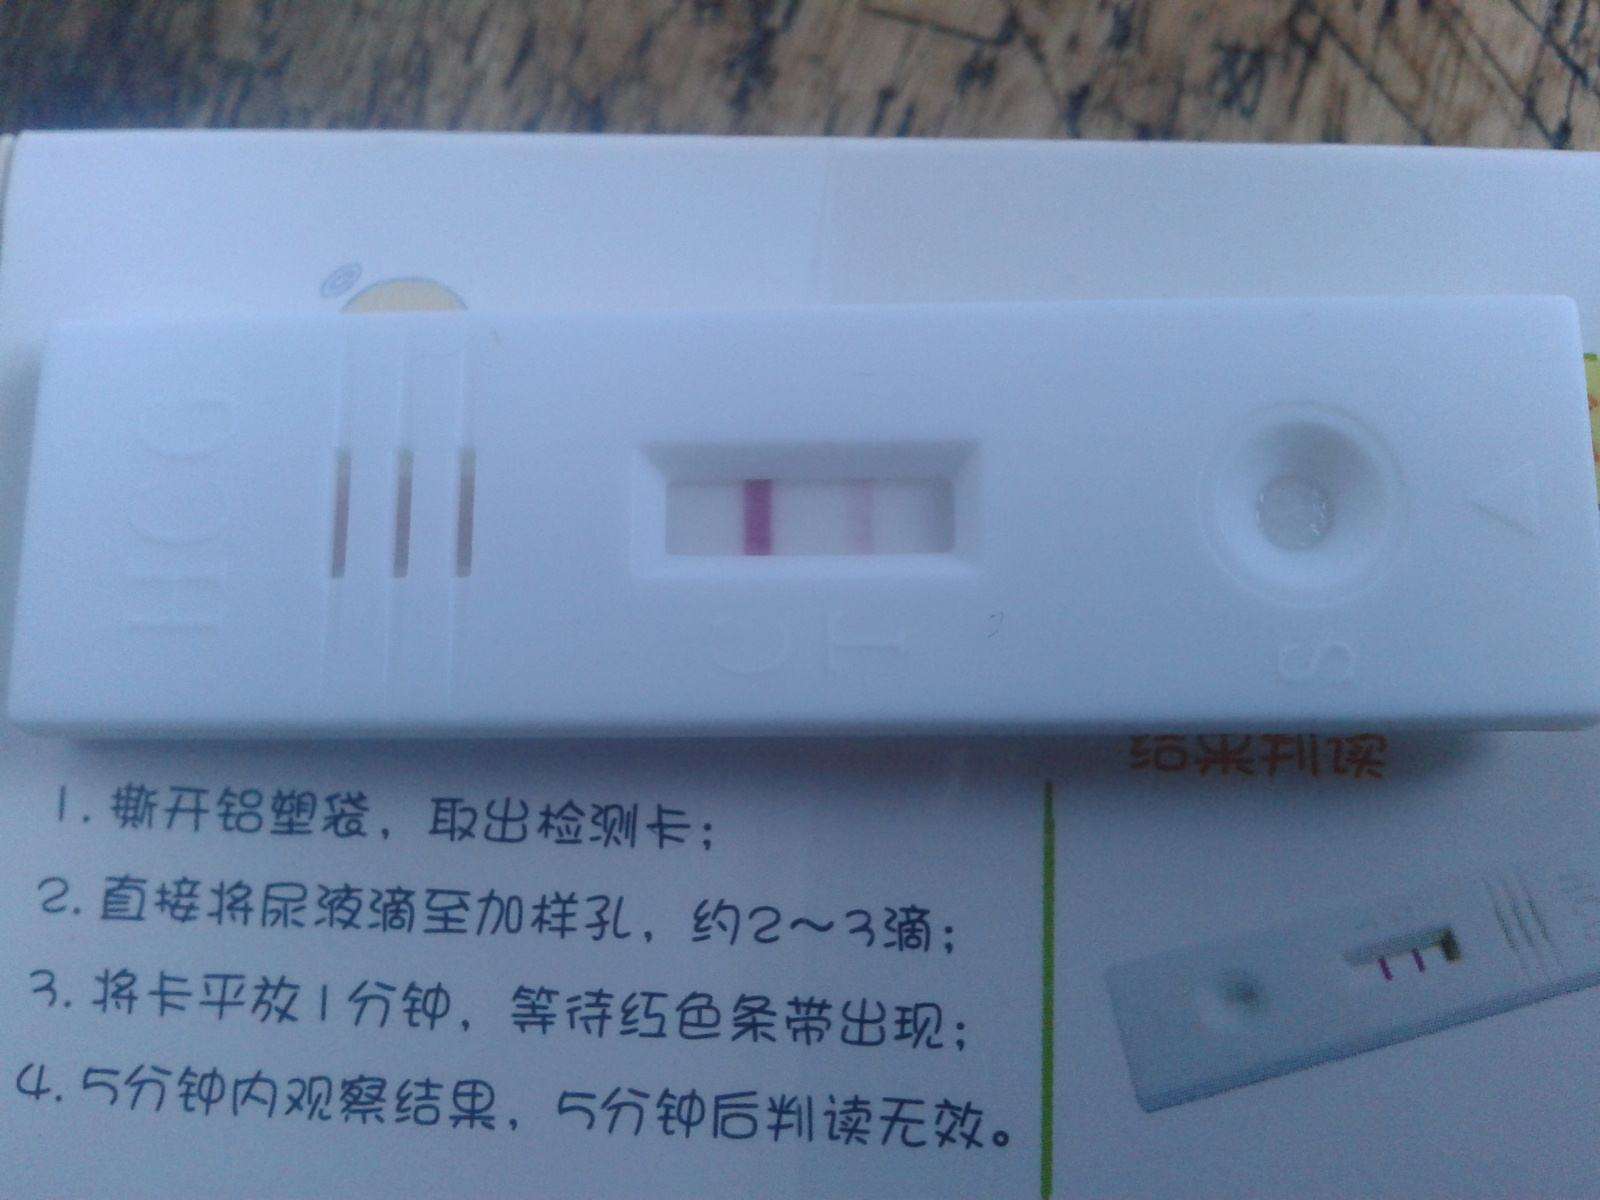 测孕纸什么时候能测出怀孕?测孕纸必须用晨尿